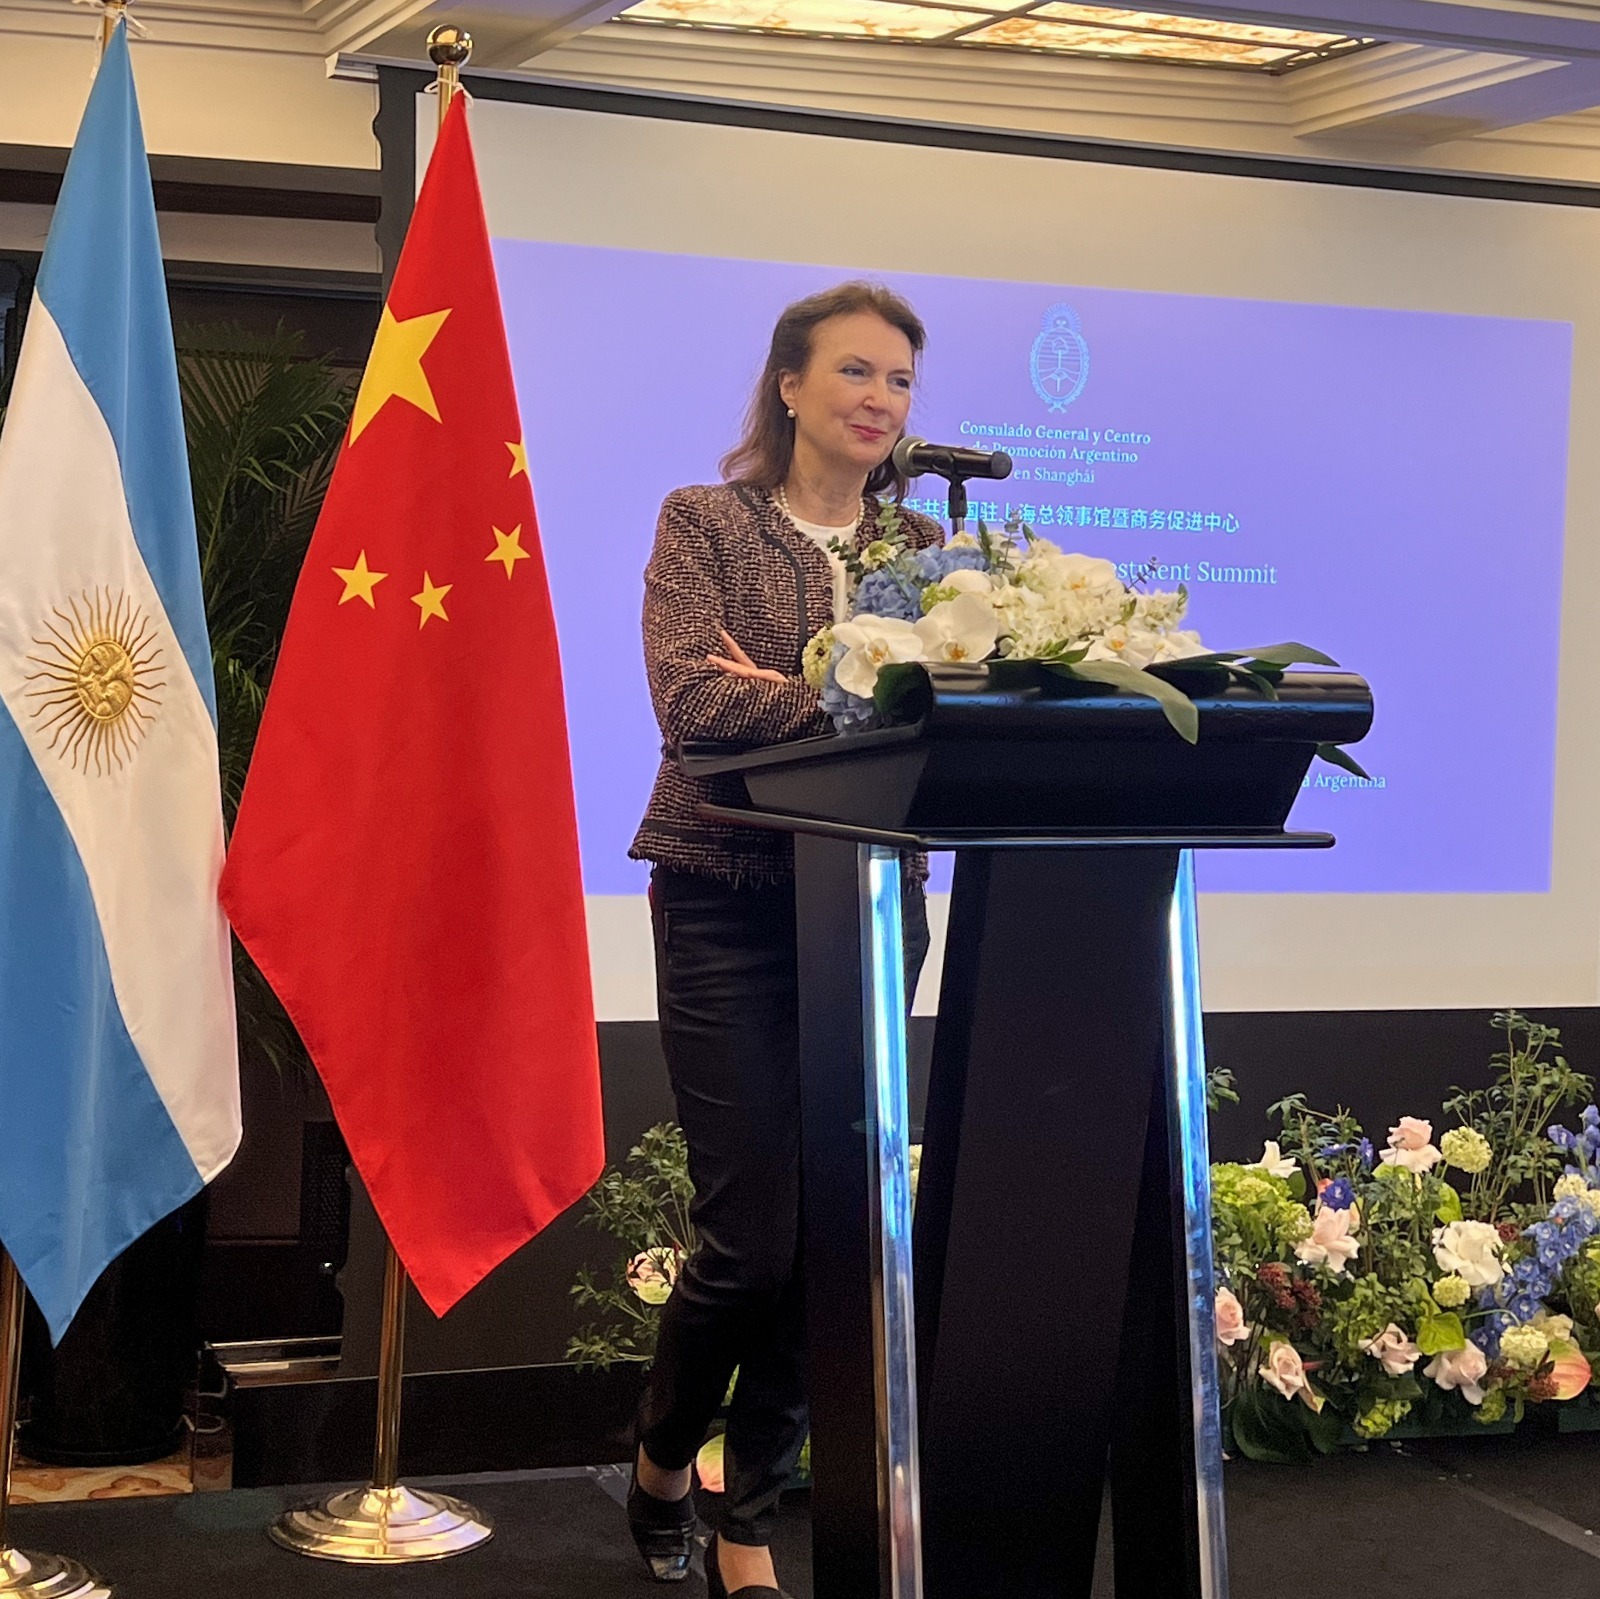 Chanceler da Argentina inicia visita à China com ênfase em investimentos